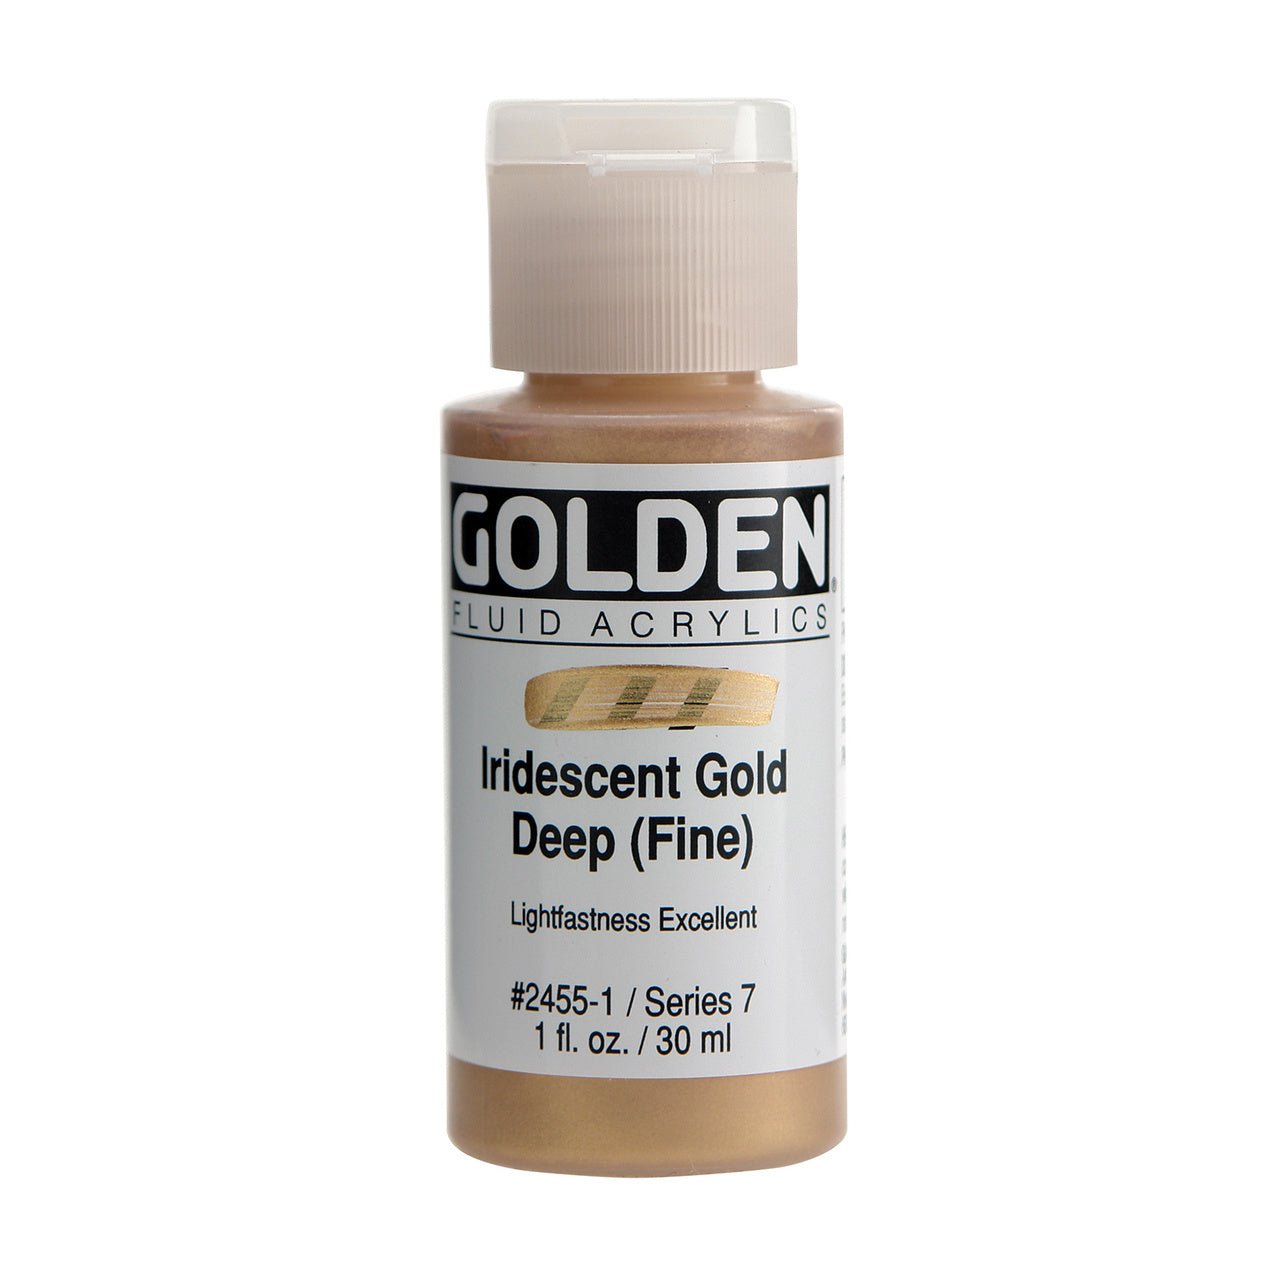 Golden Fluid Acrylic Iridescent Gold Deep (fine) 1 oz - merriartist.com